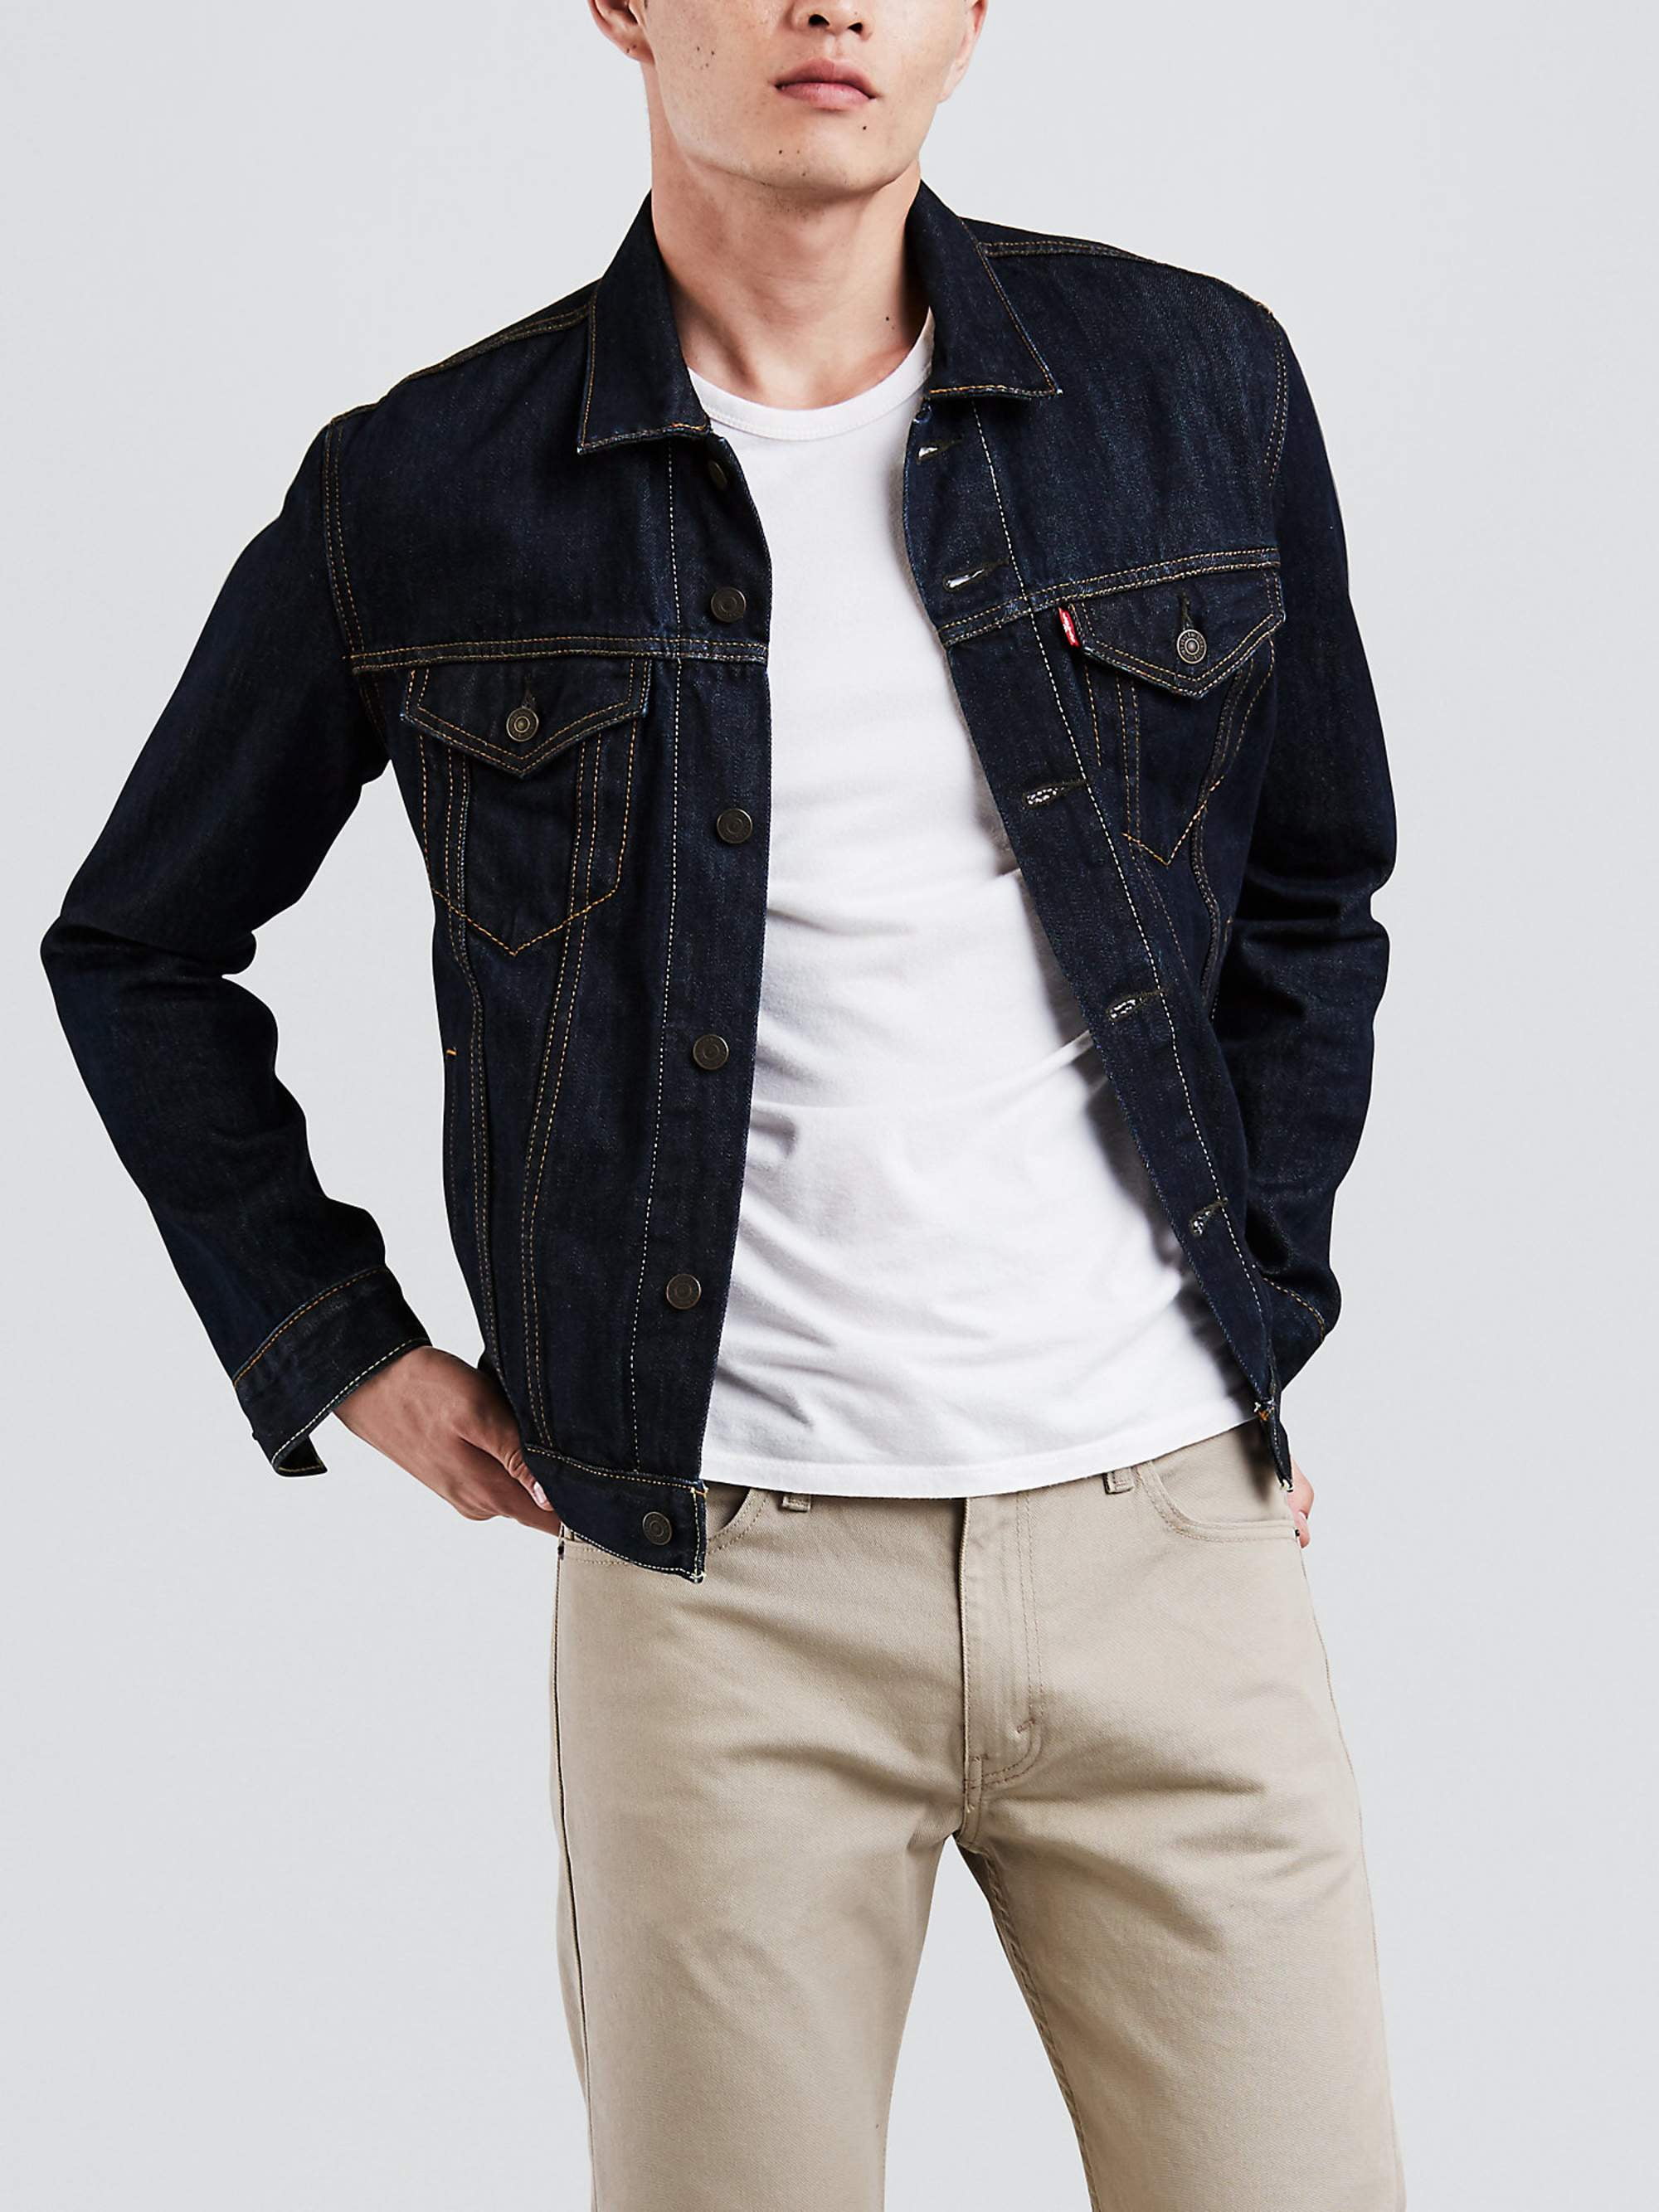 Mens Fleece Lined Winter Warm Coat Denim Jeans Fur Jacket Trucker Collar Outwear